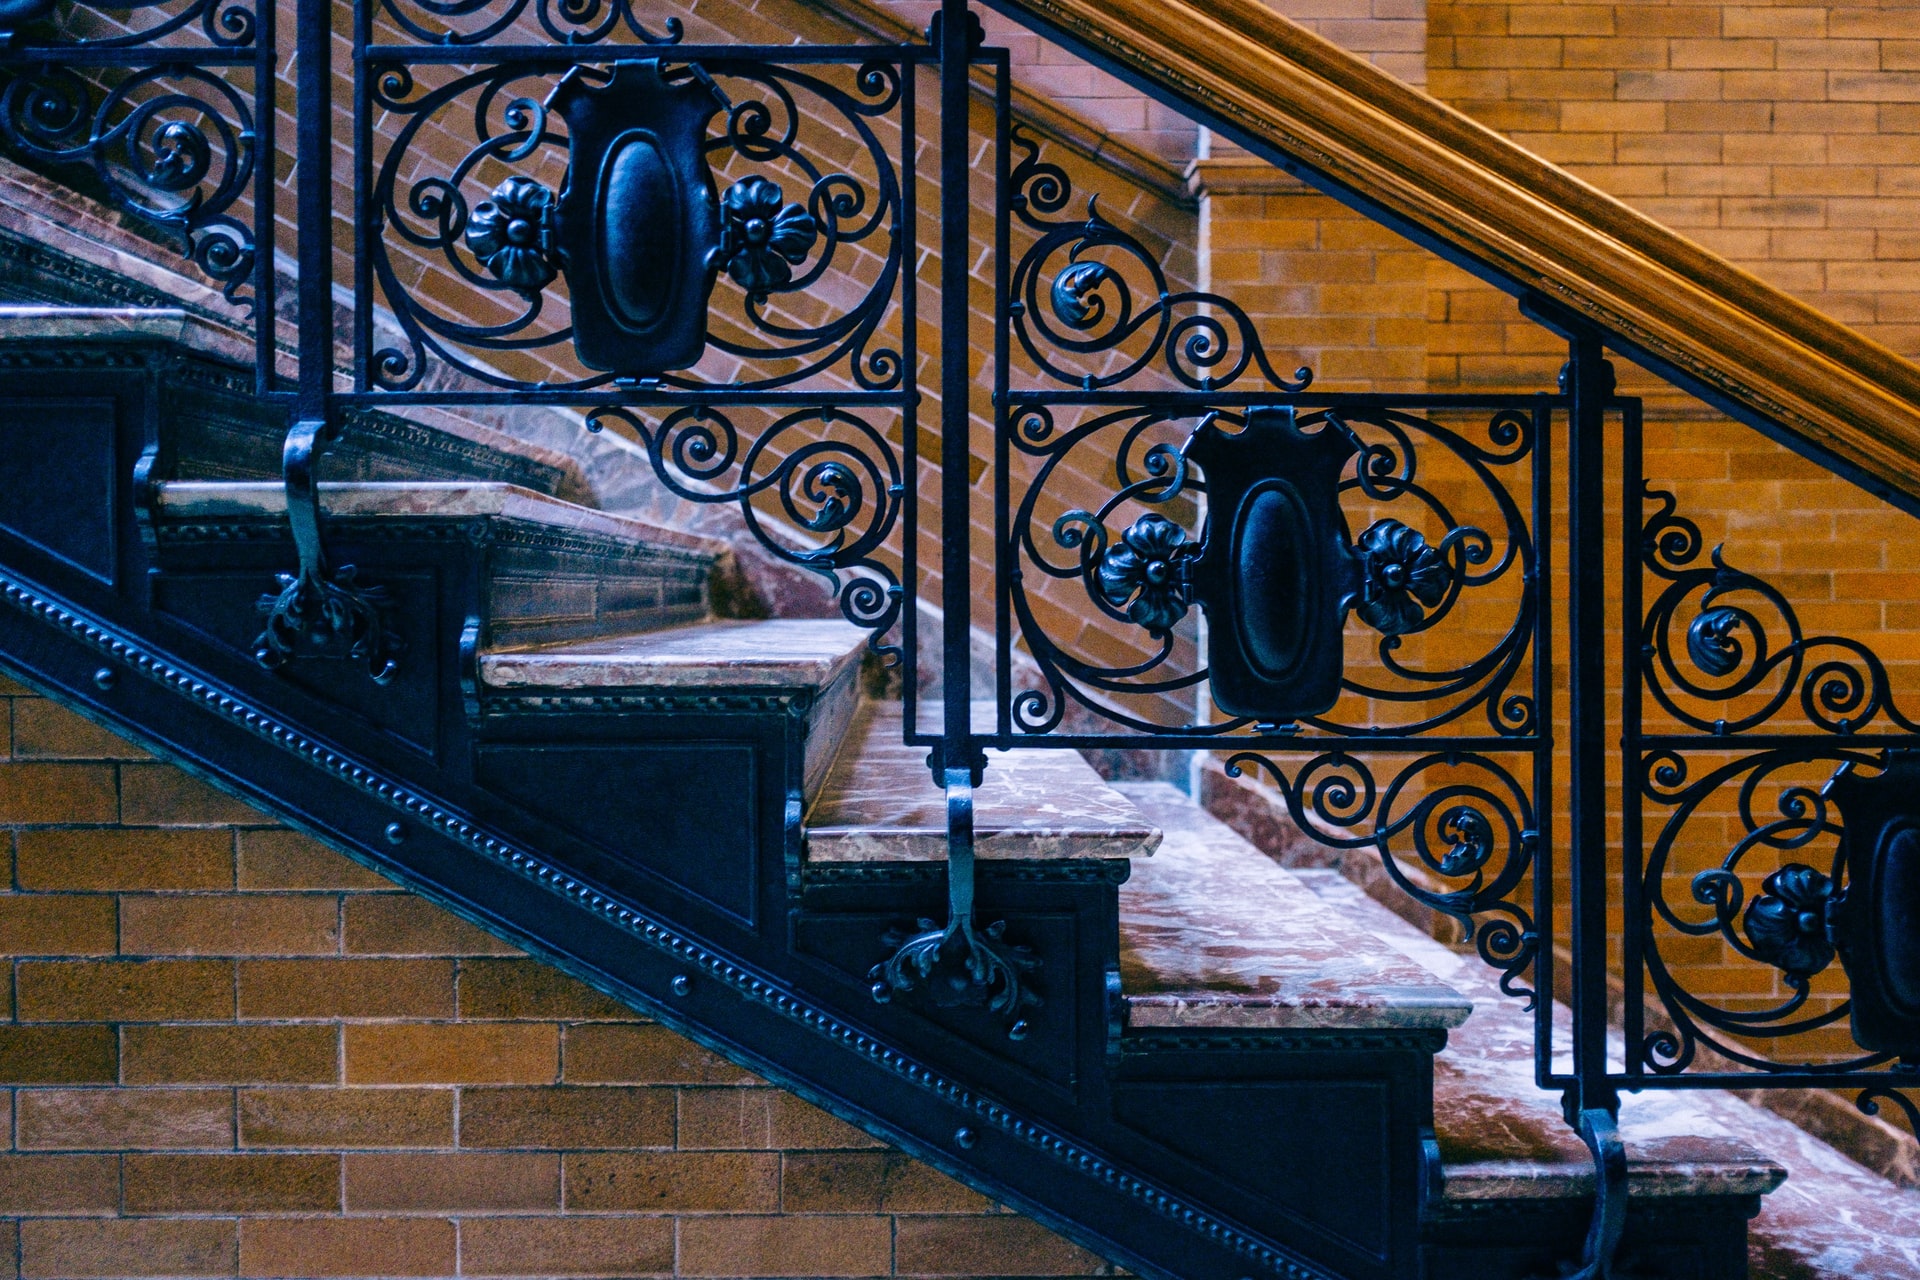 Bradbury Building detailing on staircase